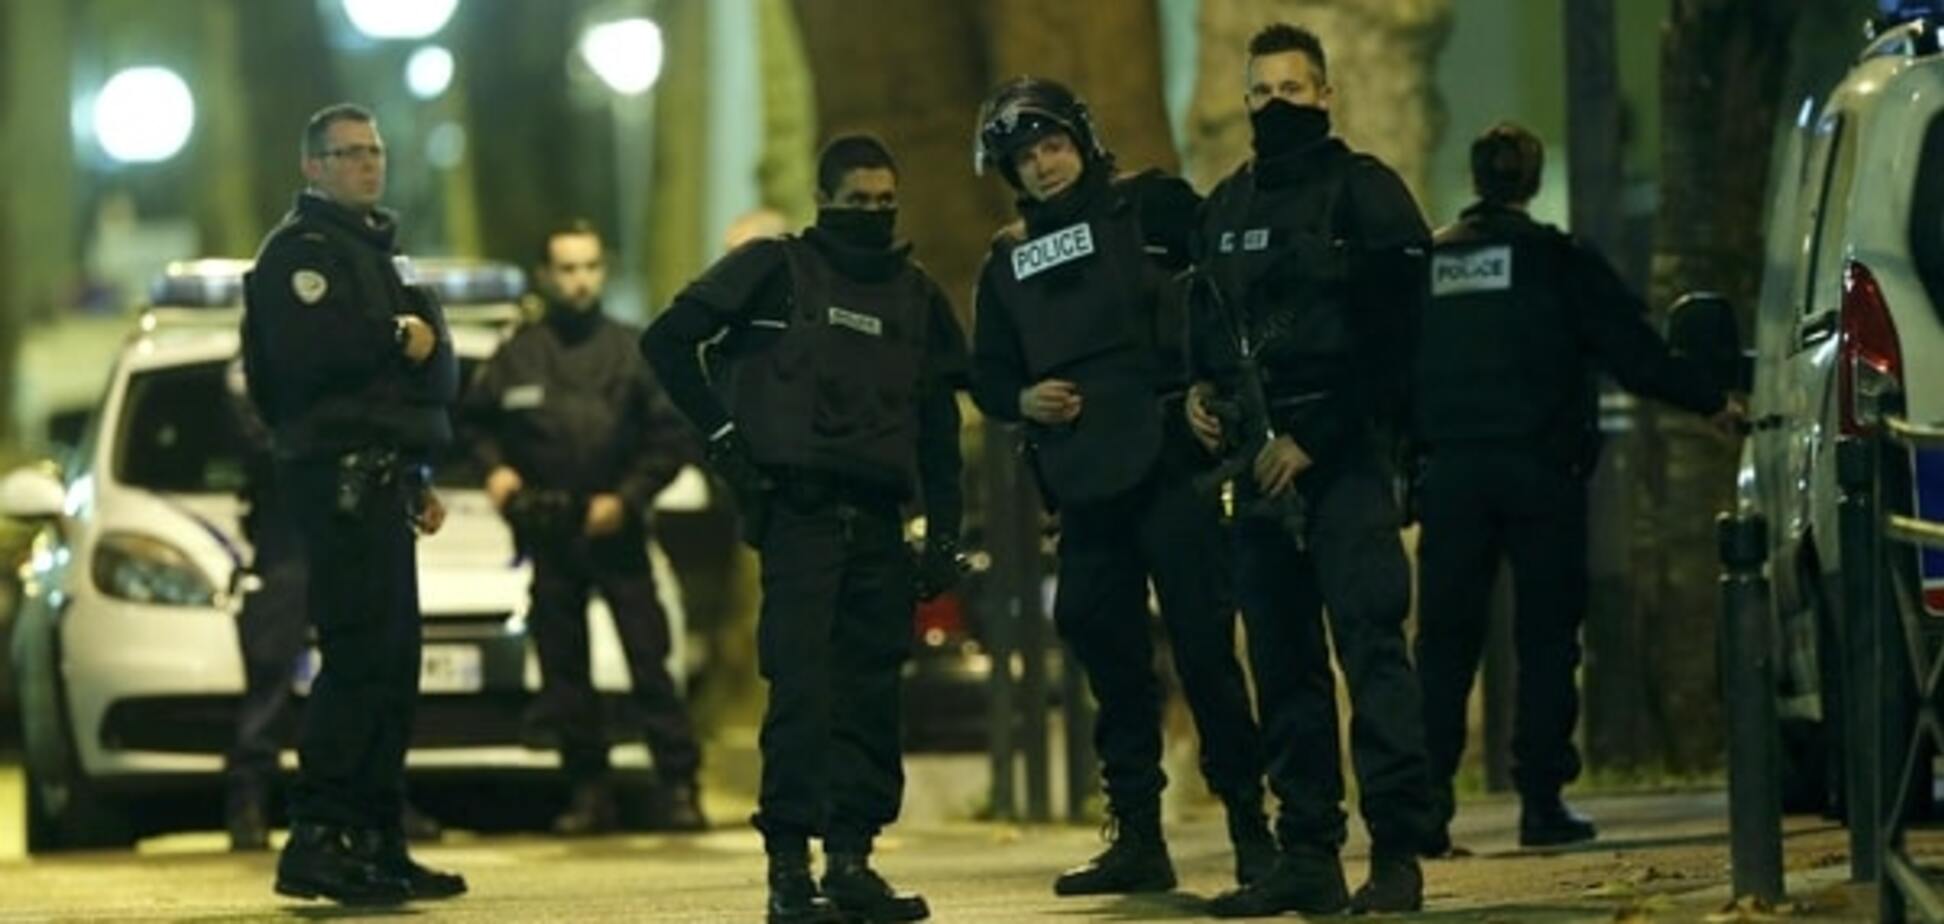 Організатор терактів у Парижі ліквідований в ході спецоперації - ЗМІ